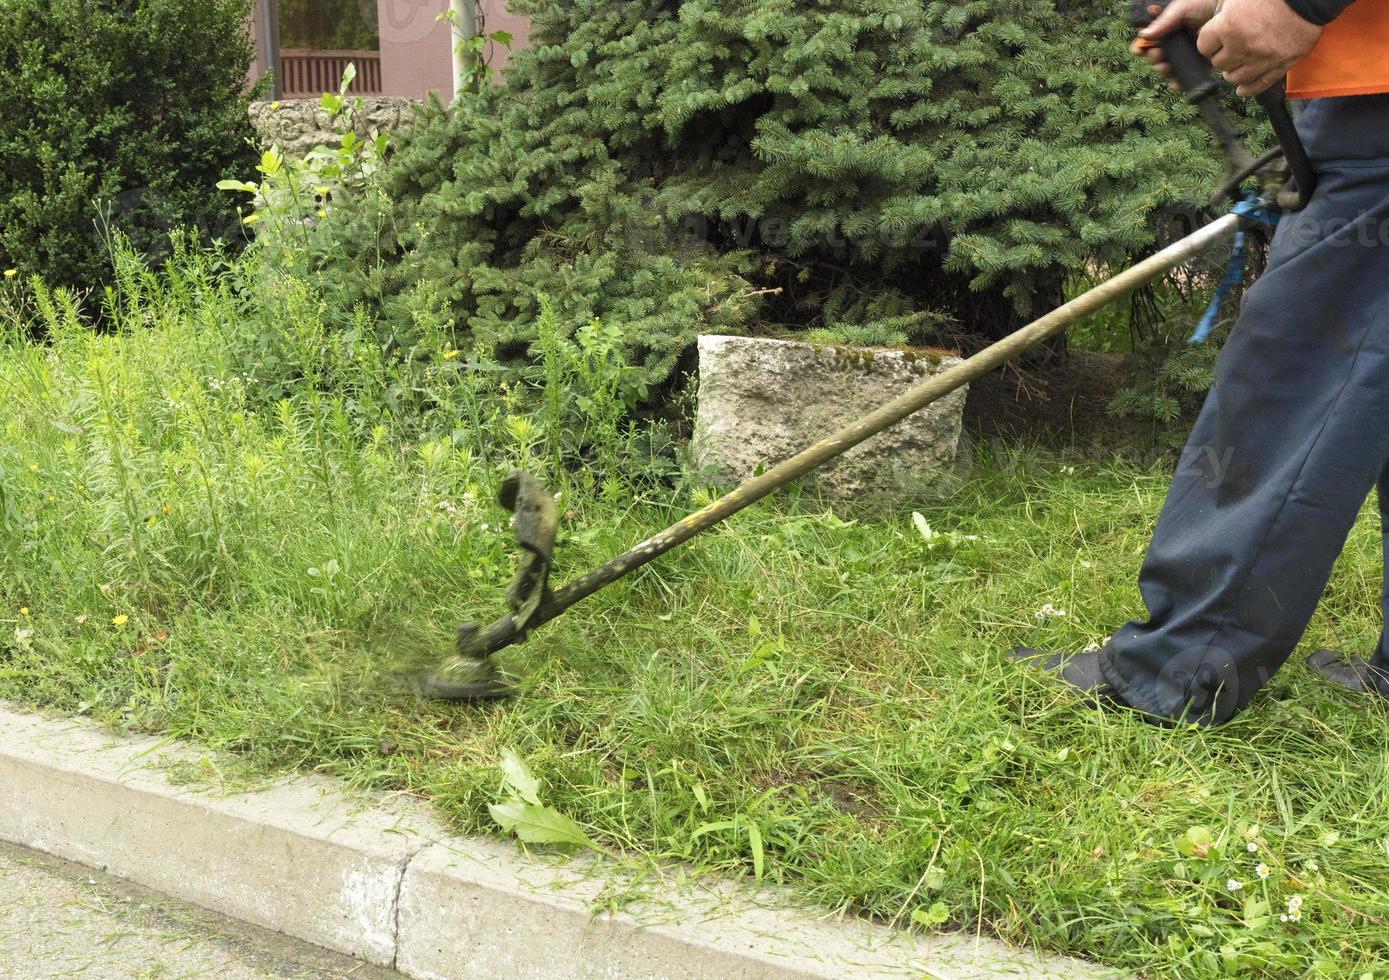 de arbeider snijdt het hoge gras met een industriële benzine die gras trimt foto